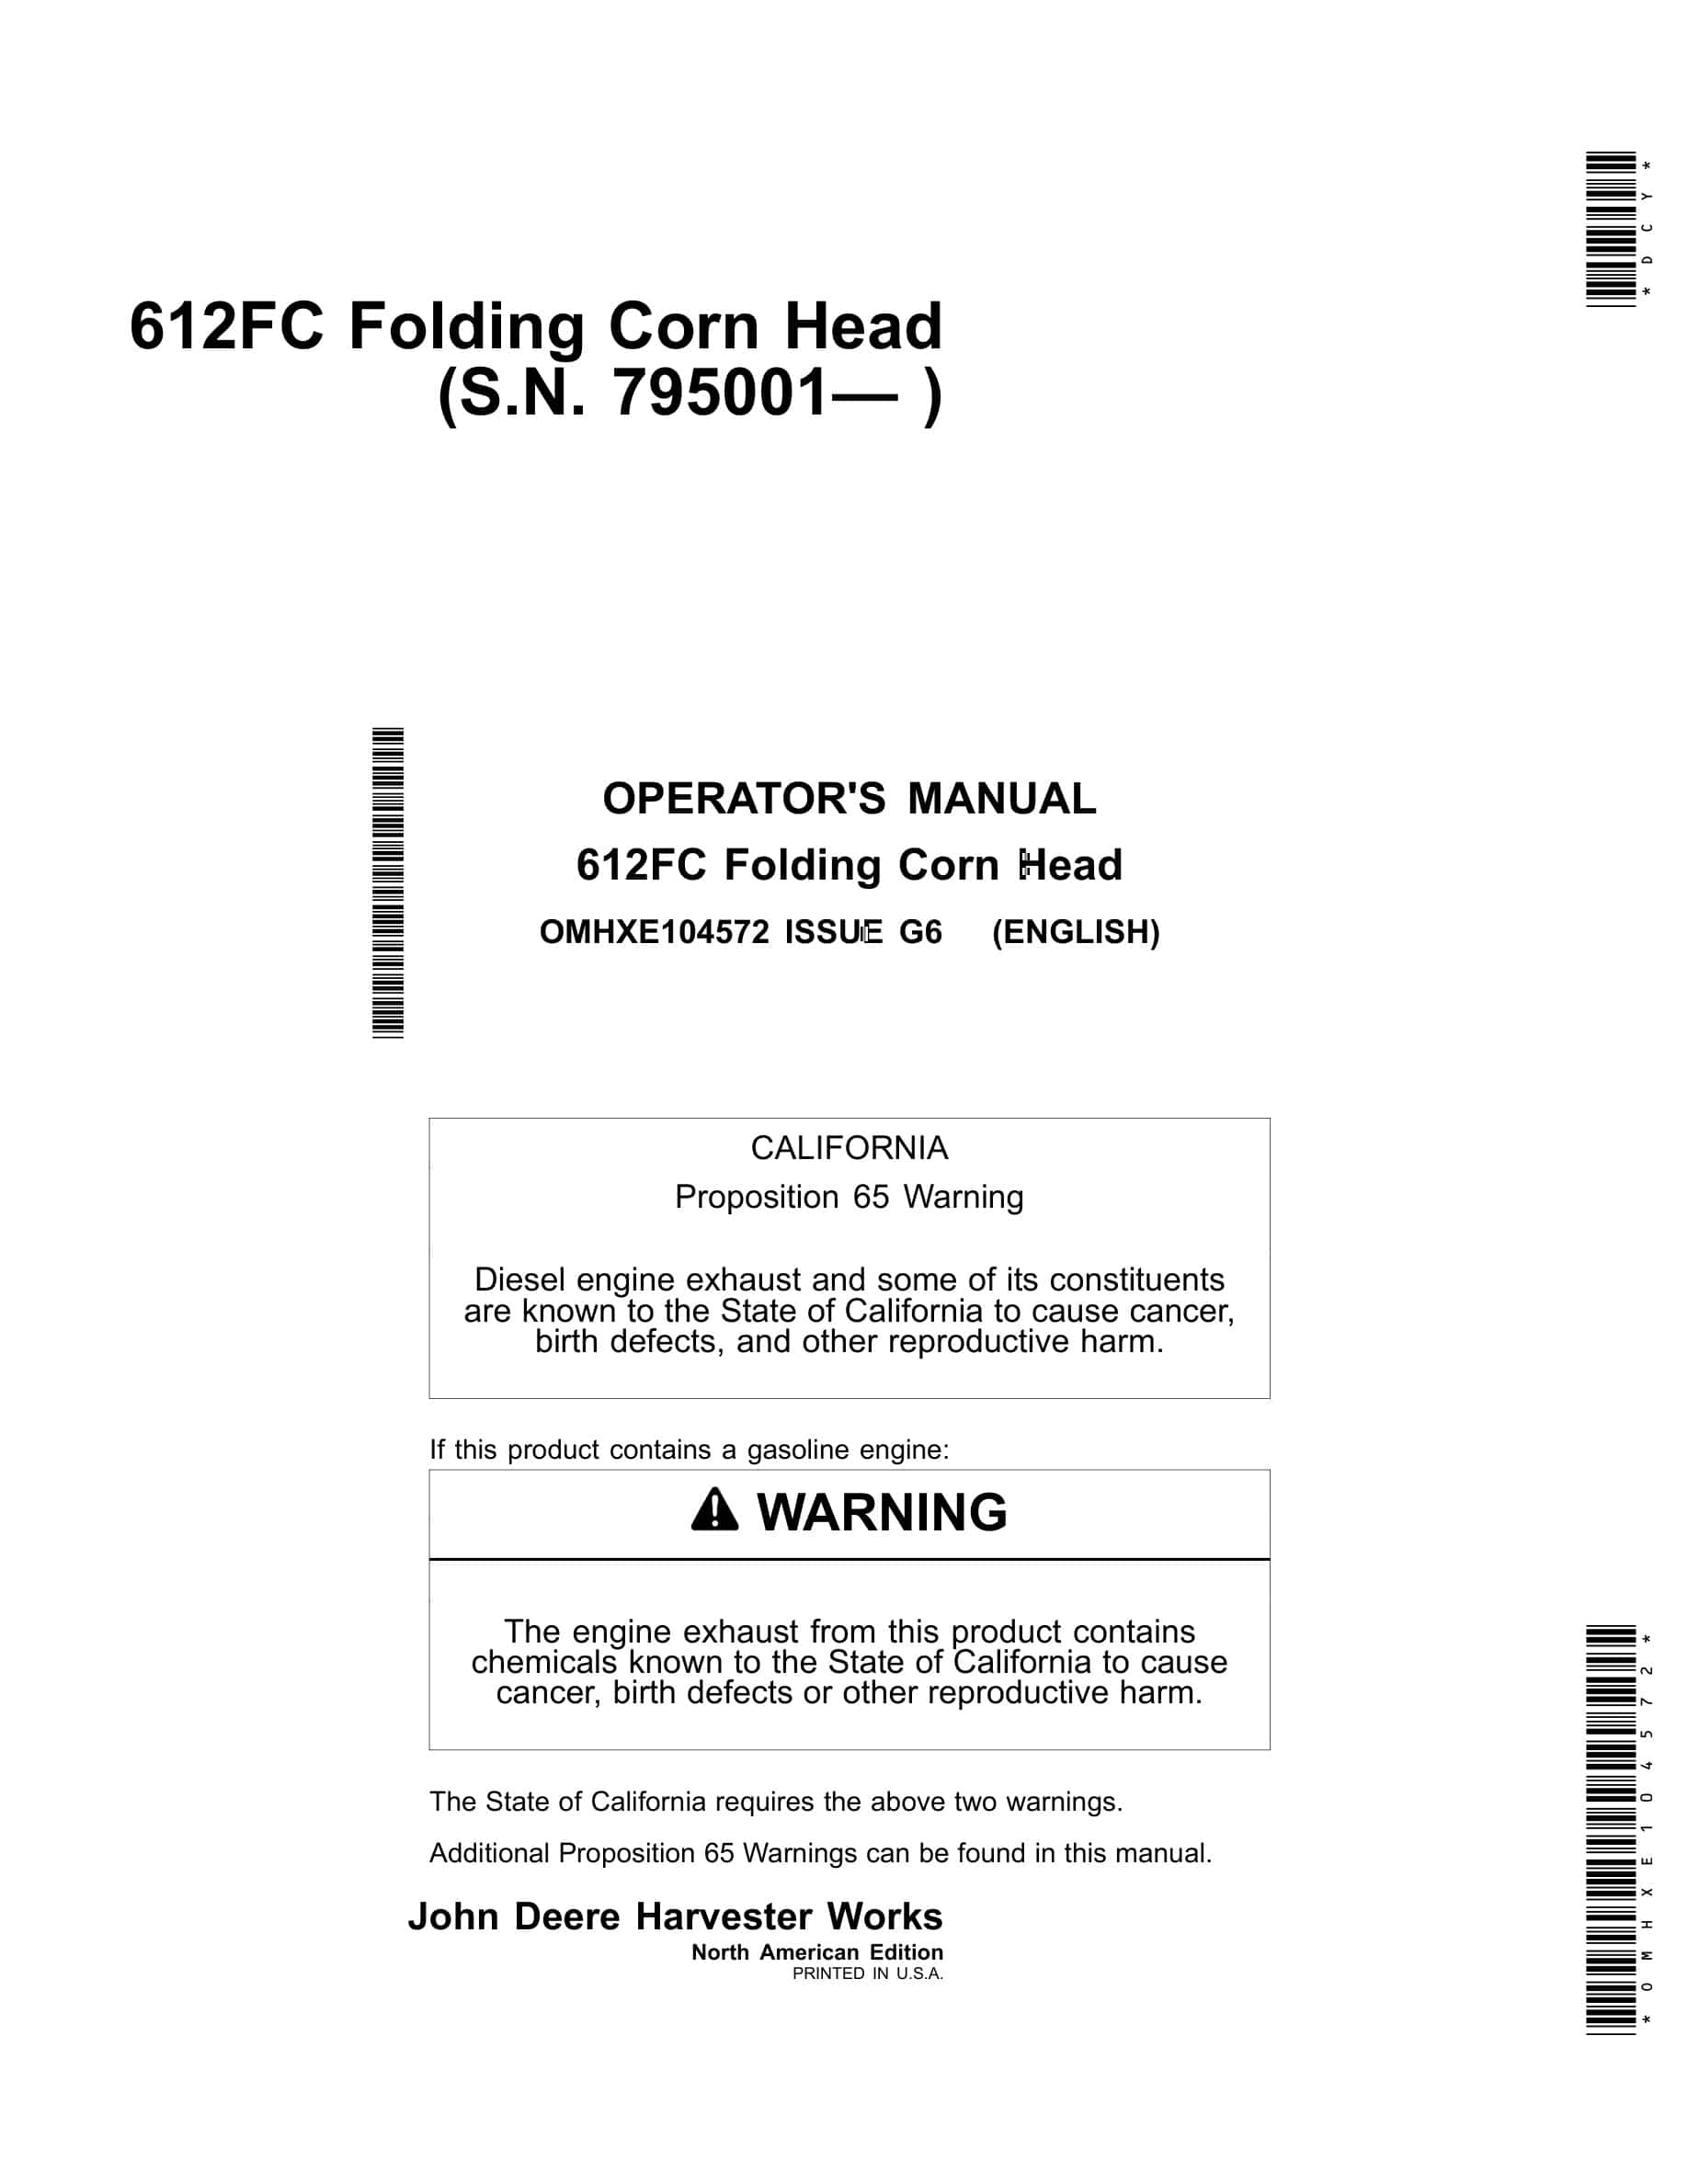 John Deere 612FC Folding Corn Head Operator Manual OMHXE104572-1